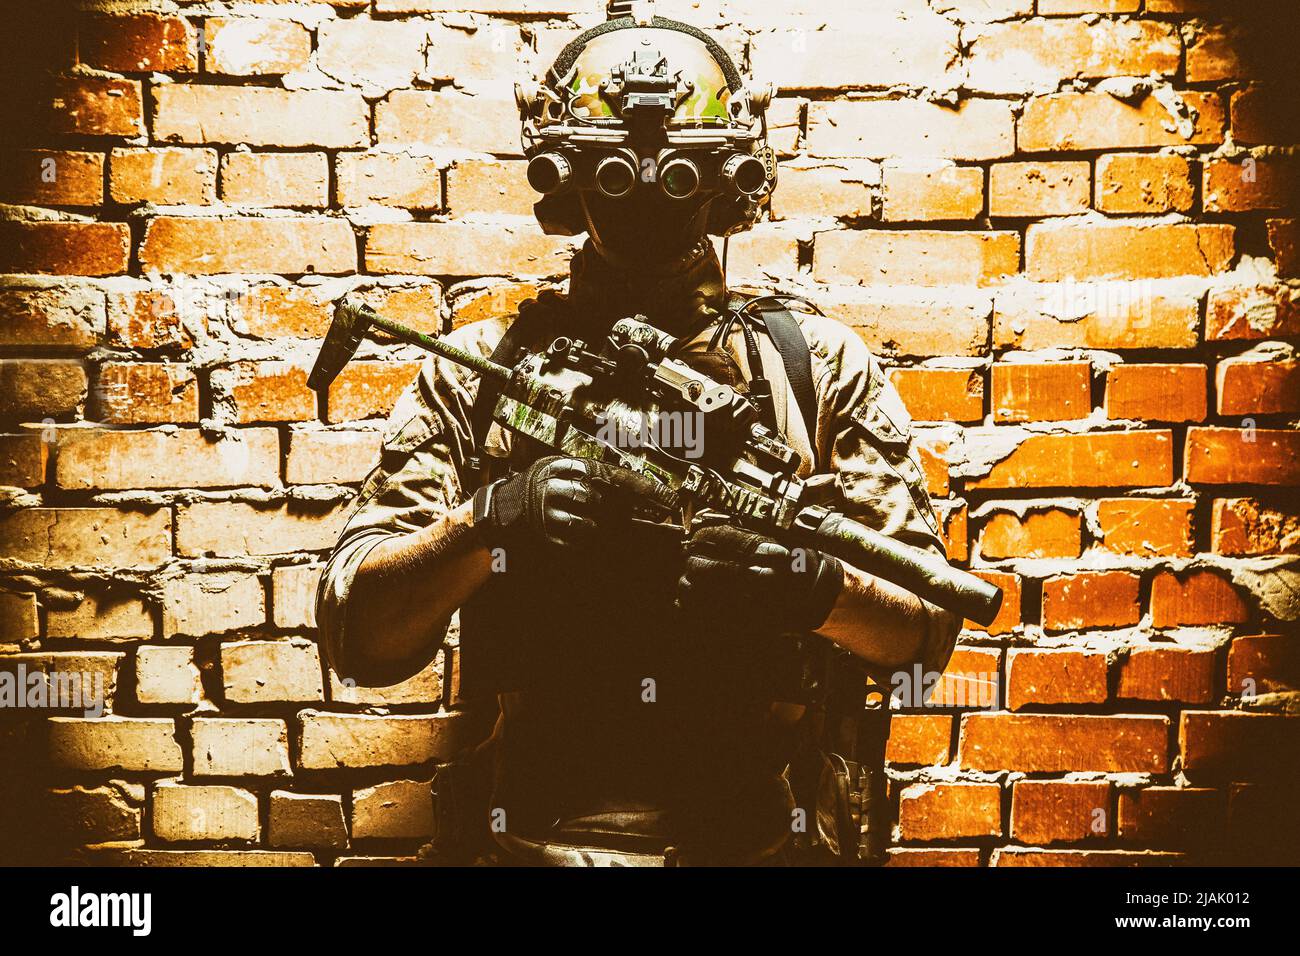 Special Forces Kämpfer, der gegen eine Ziegelwand steht, bewaffnet mit Wärmebildgerät auf Helm und Maschinengewehr. Stockfoto